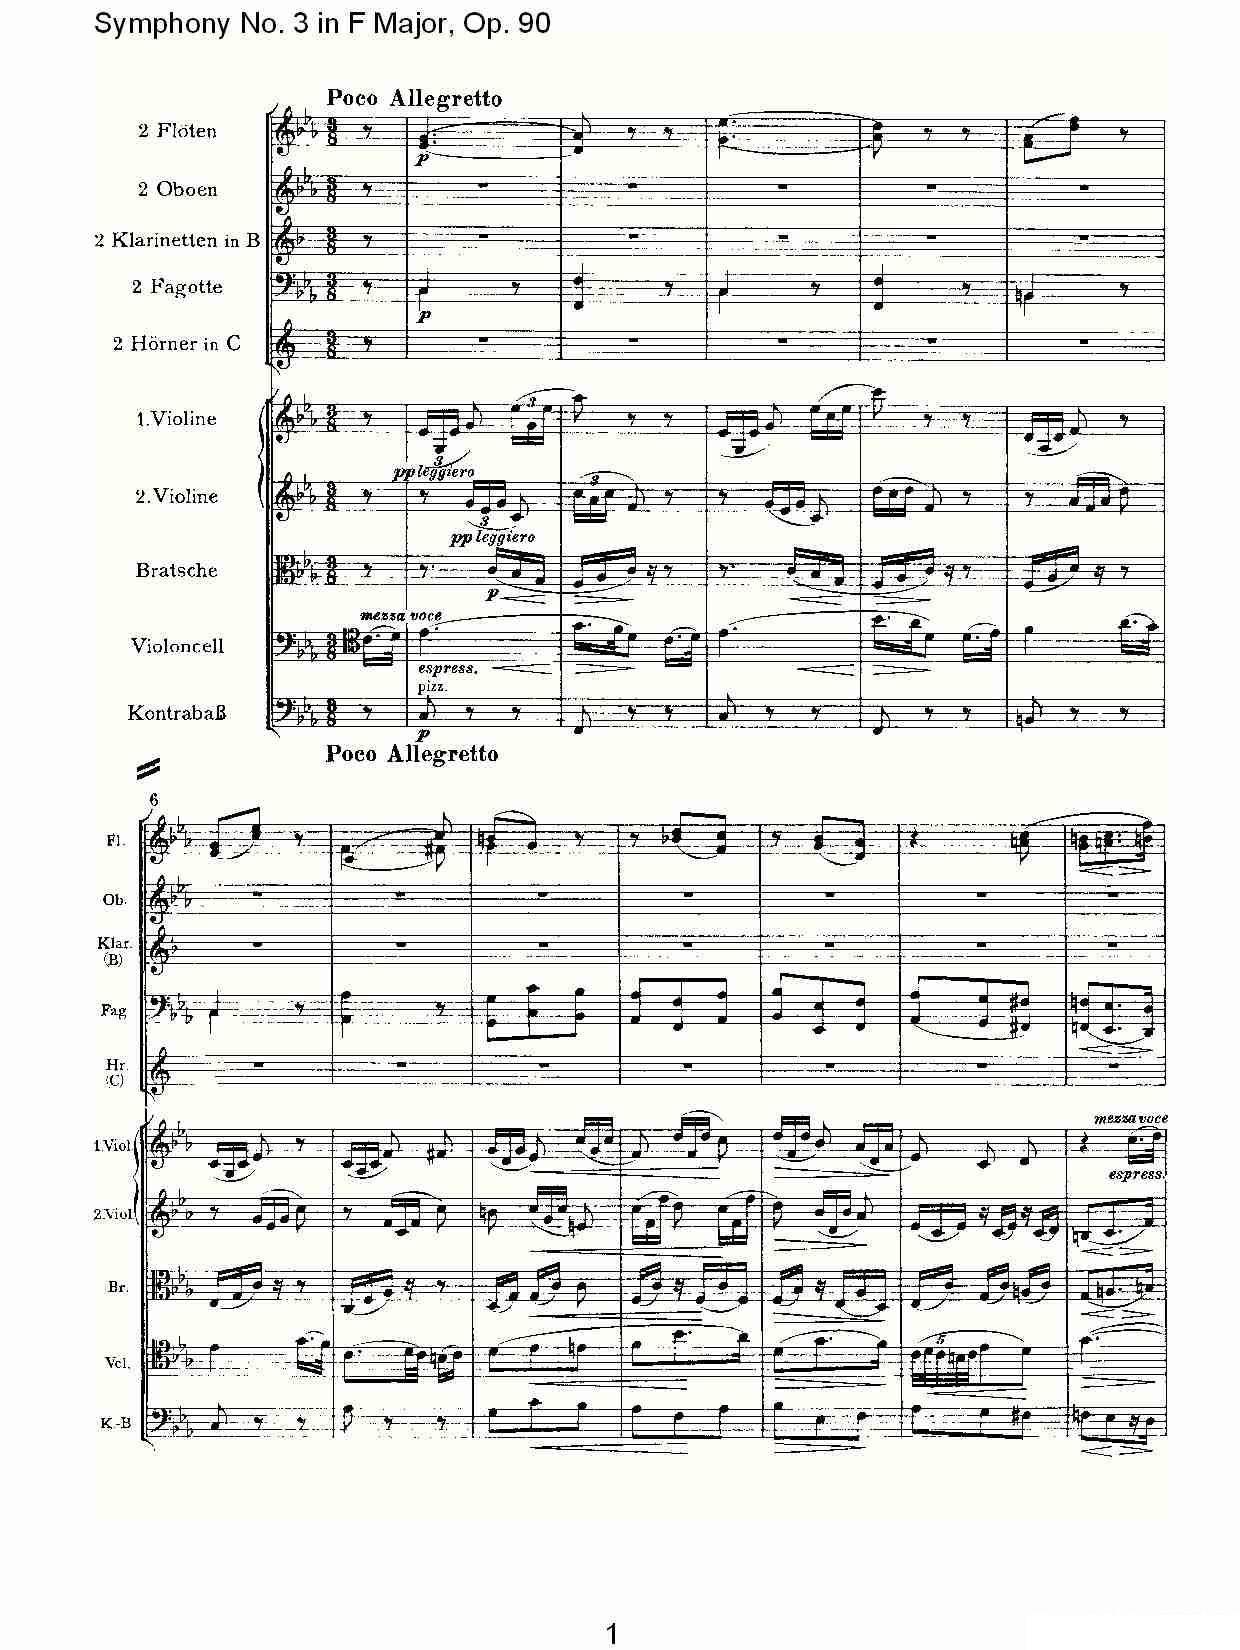 架子鼓乐谱曲谱 约翰内斯·勃拉姆斯《F大调第三交响曲, Op.90第三乐章》